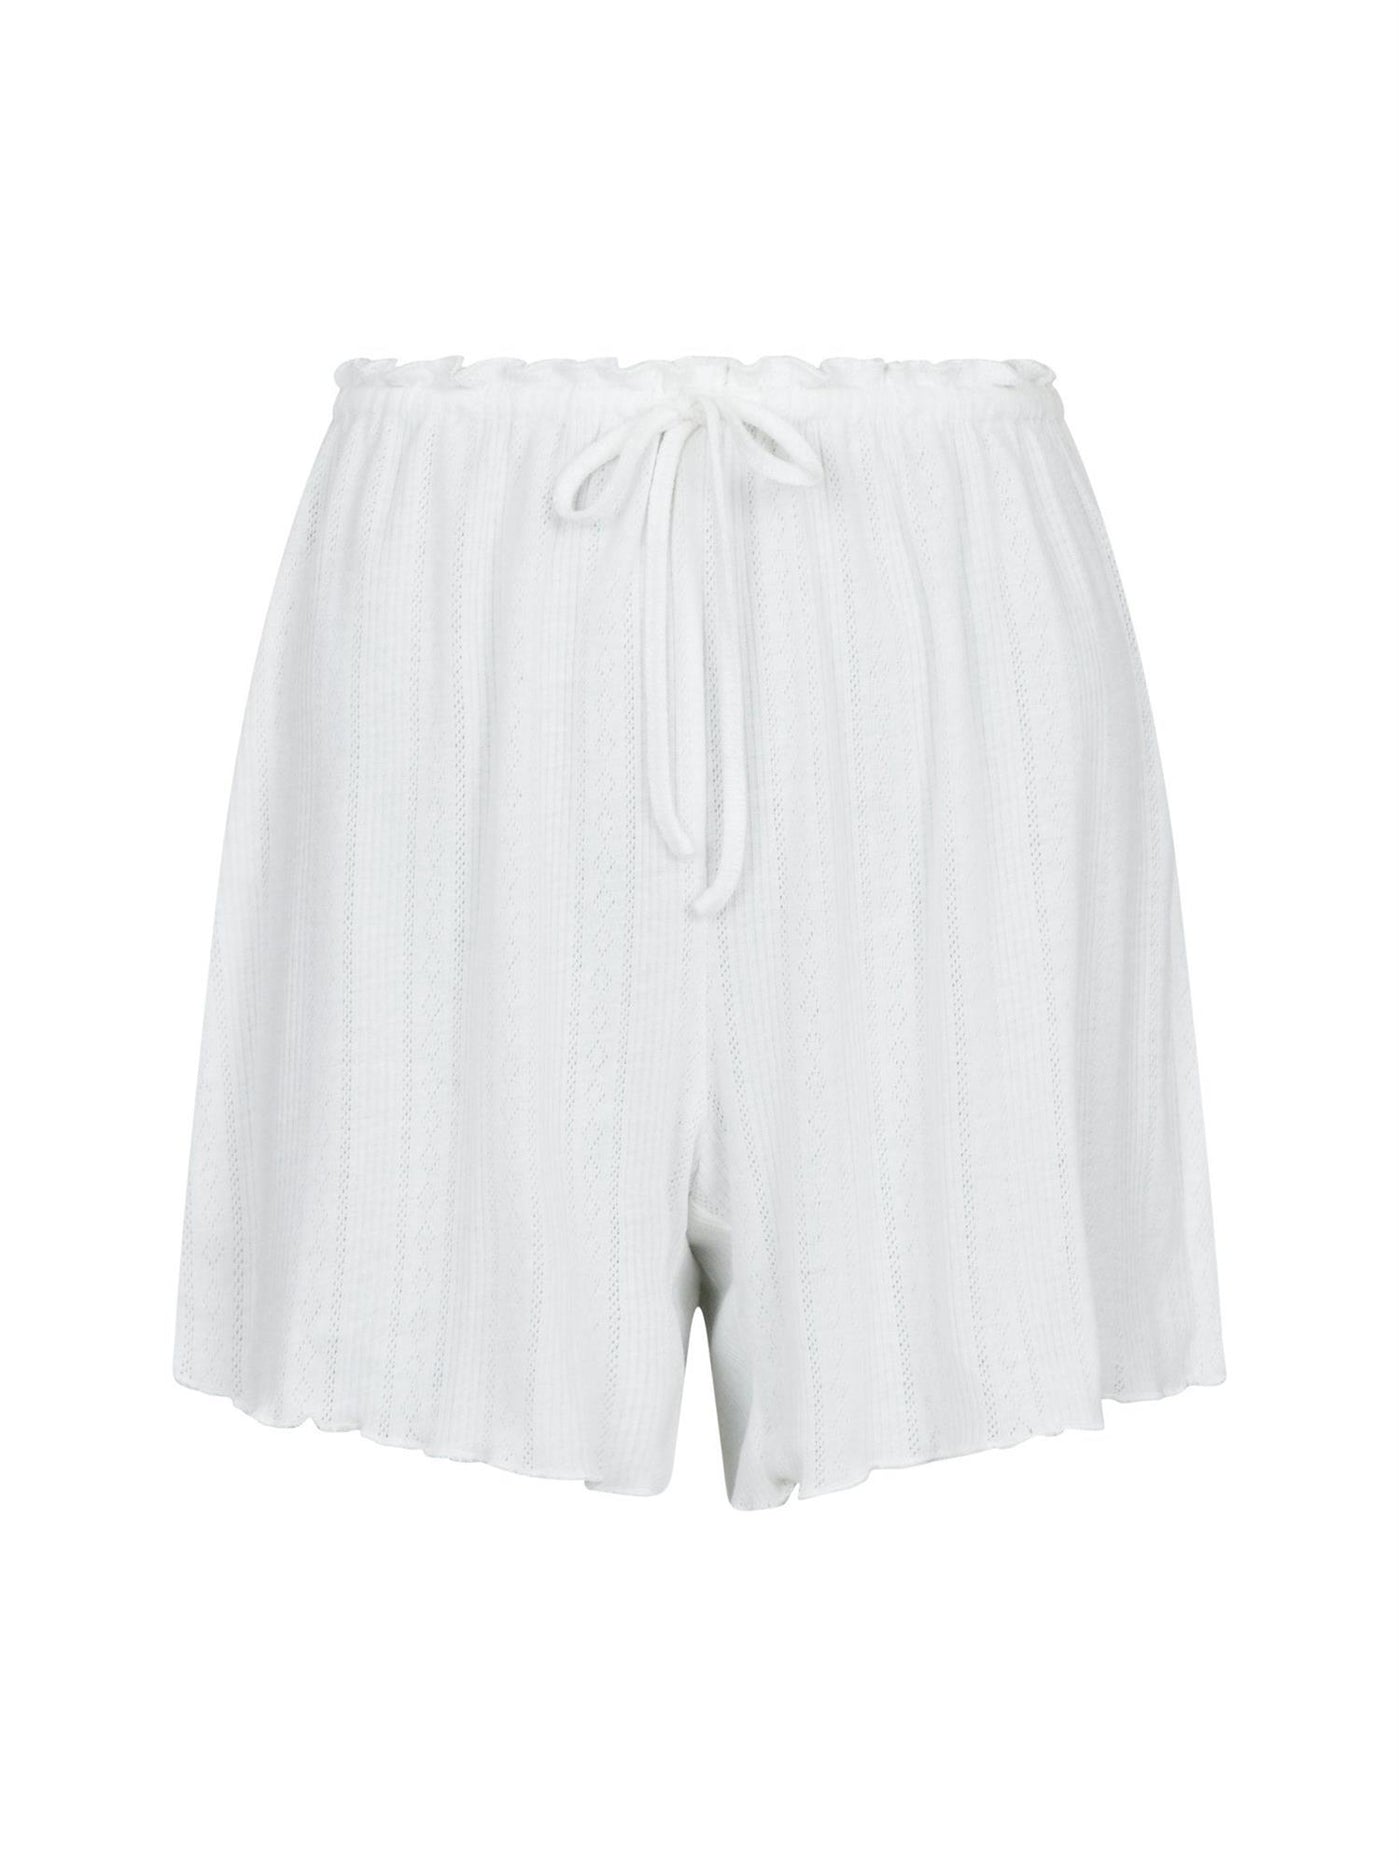 Merritt Pointelle Shorts White